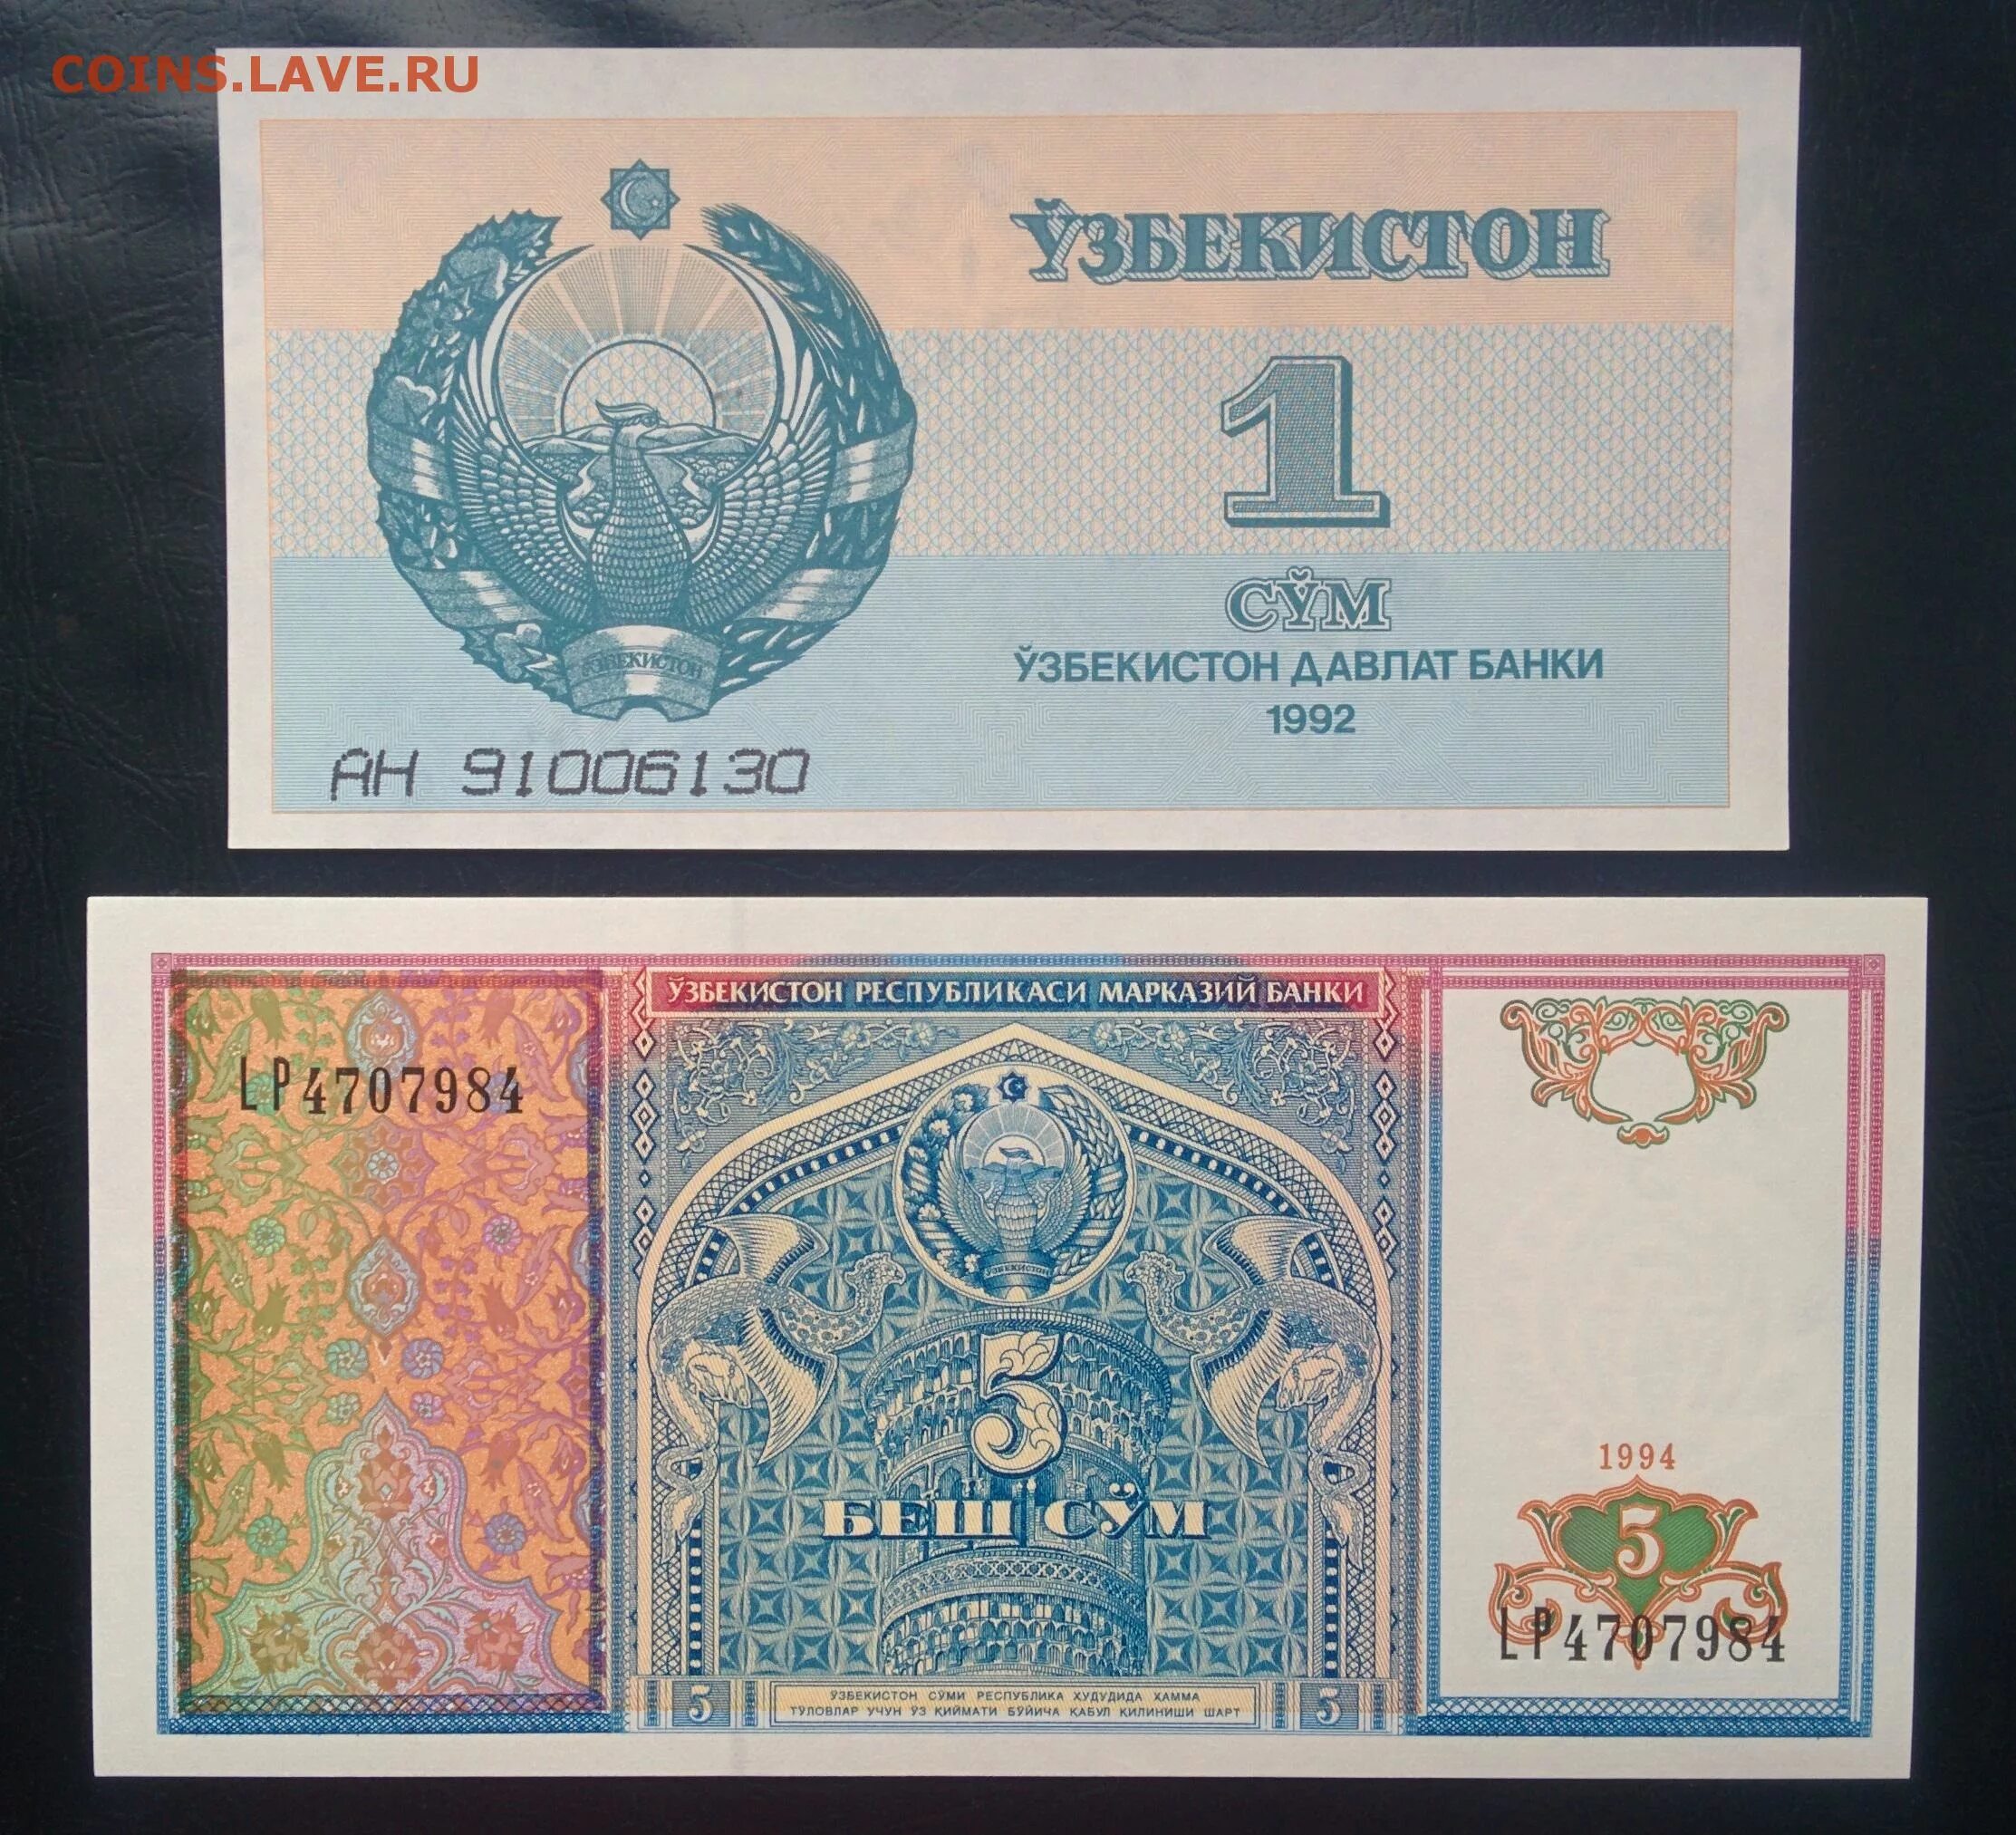 1 рубль сум узбекистан